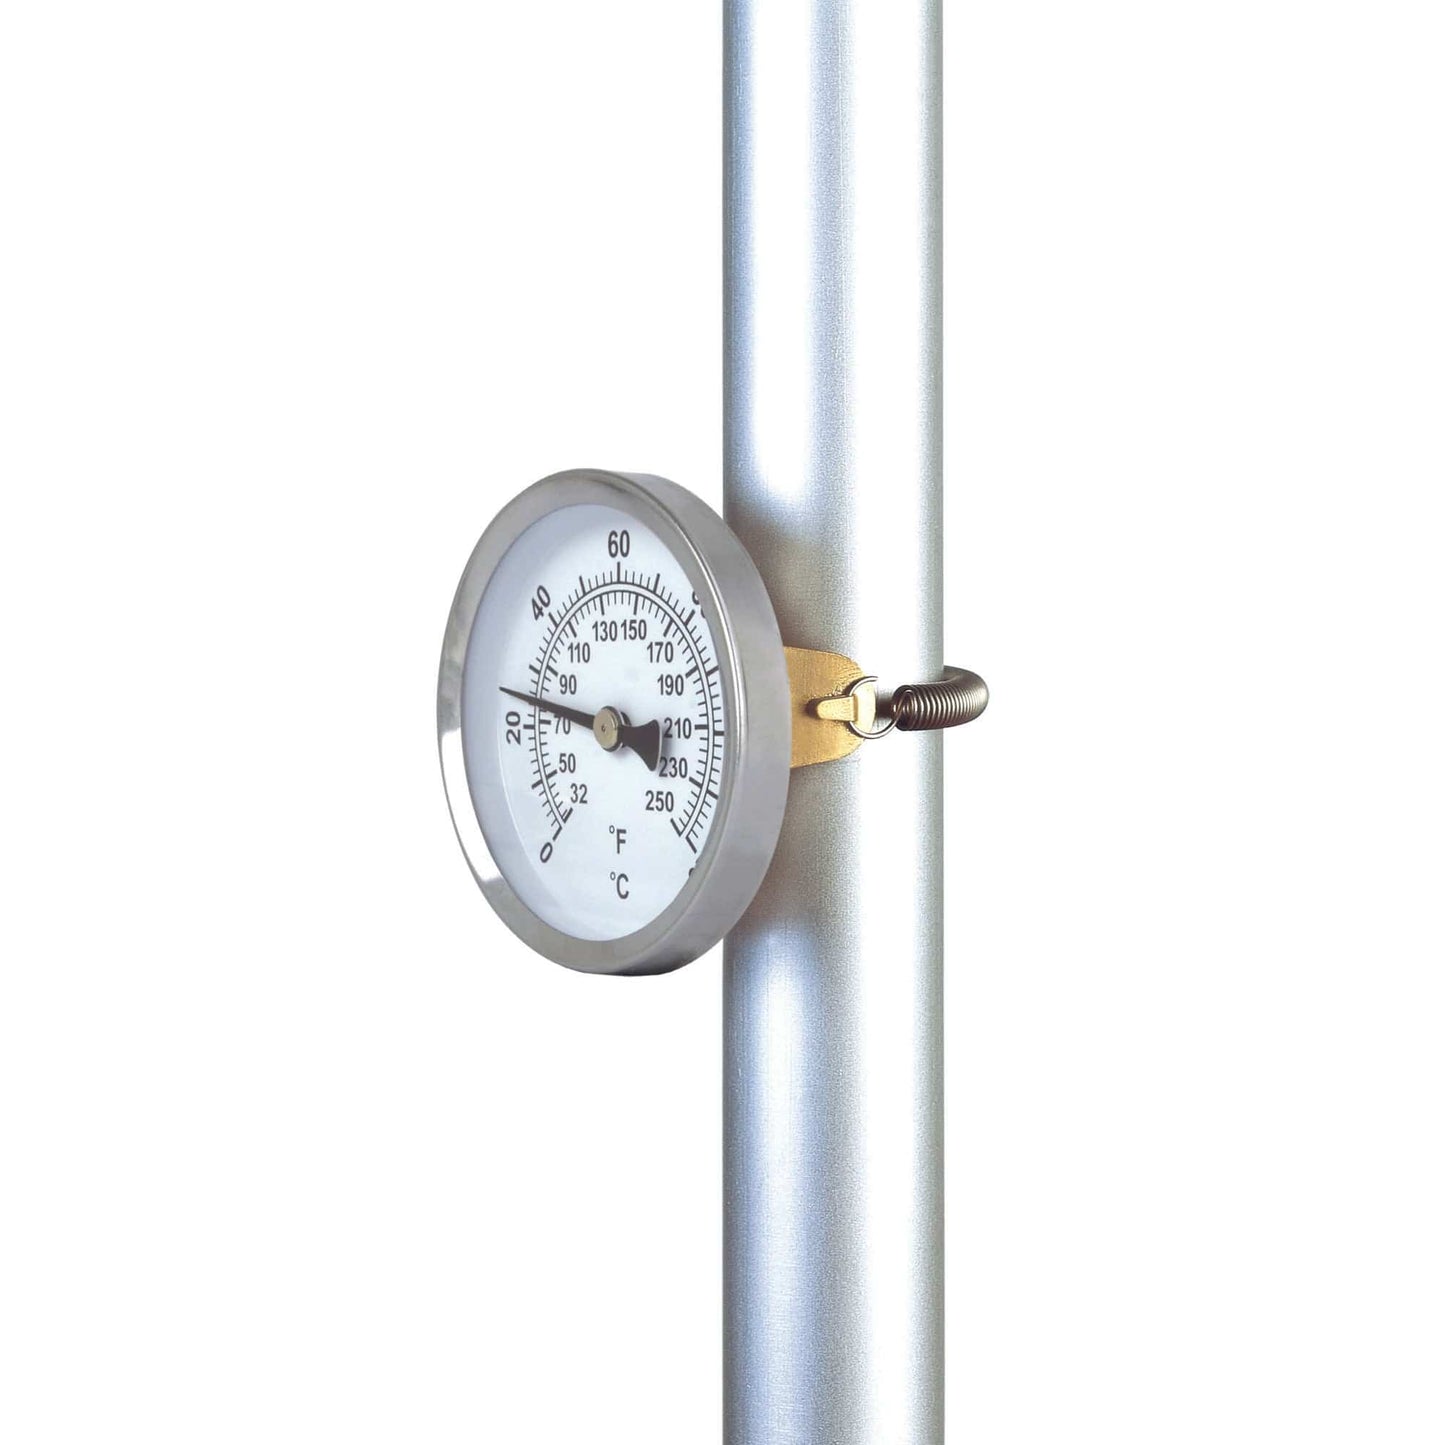 Un thermomètre Thermometre.fr est fixé à un poteau sur fond blanc.